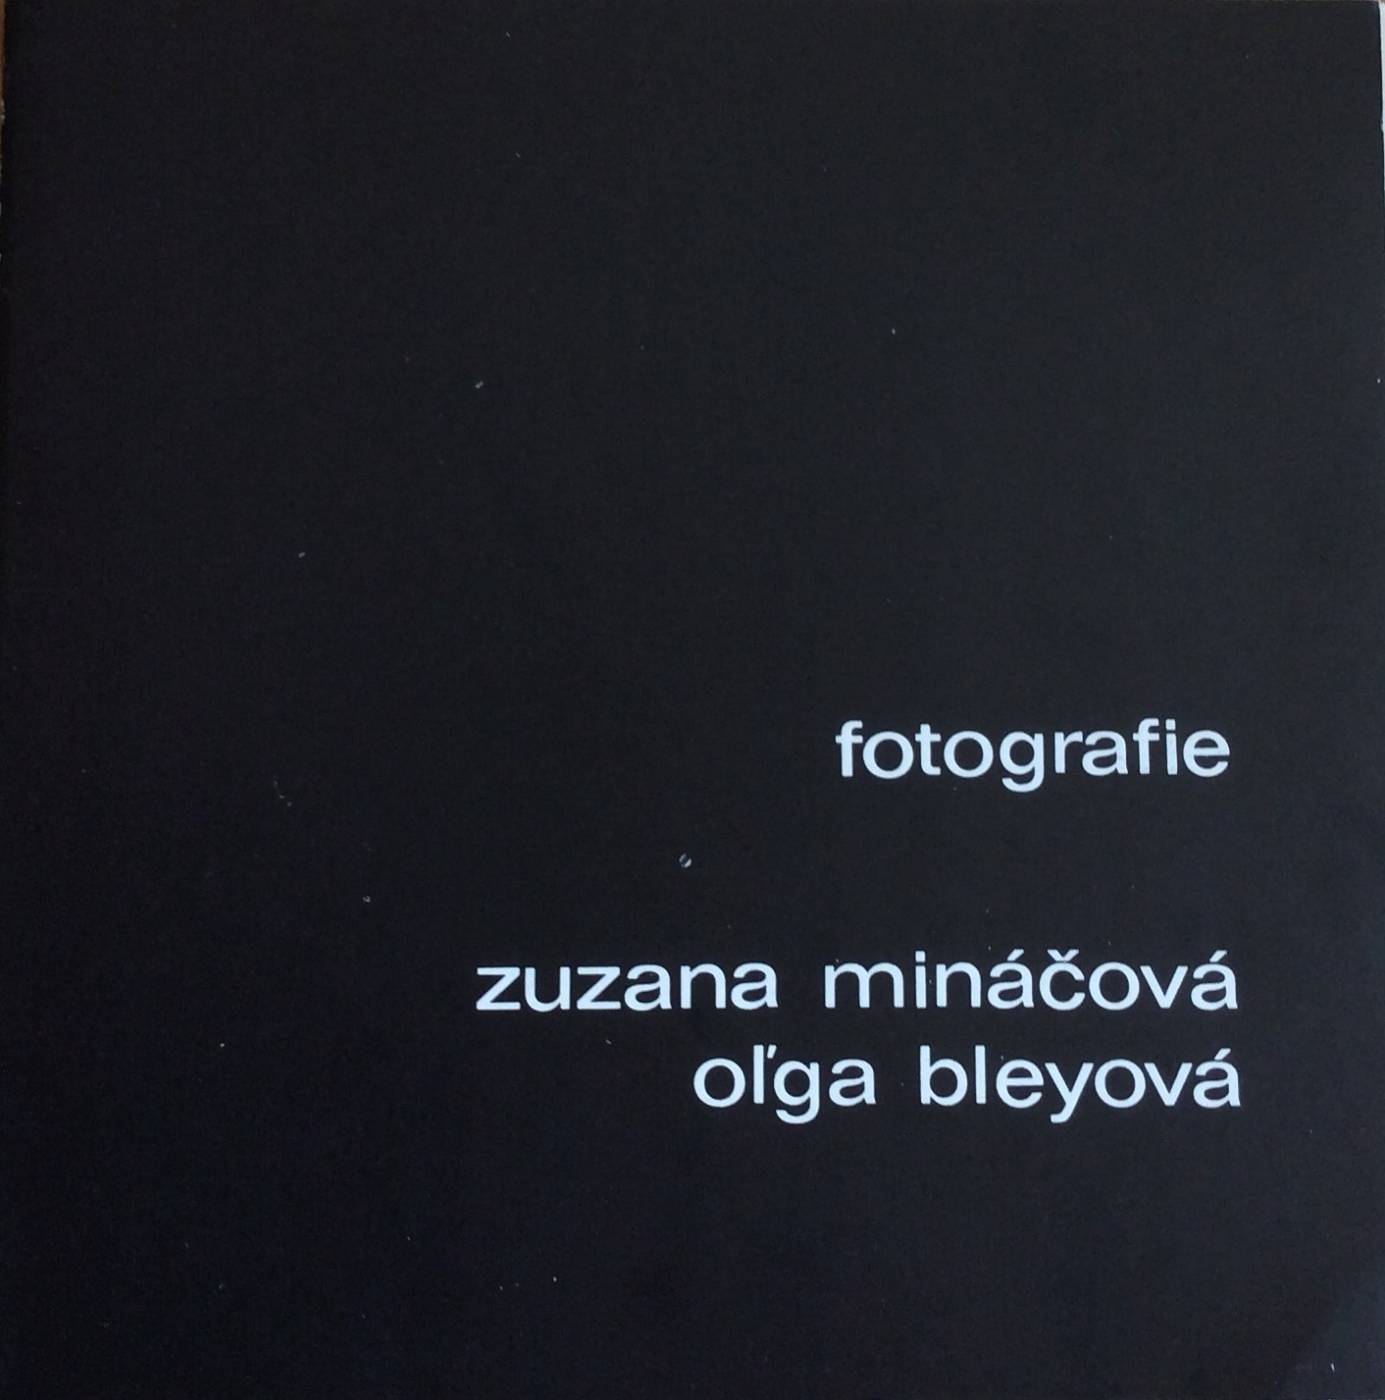 Zuzana Mináčová, Ol’ga Bleyová – fotografie